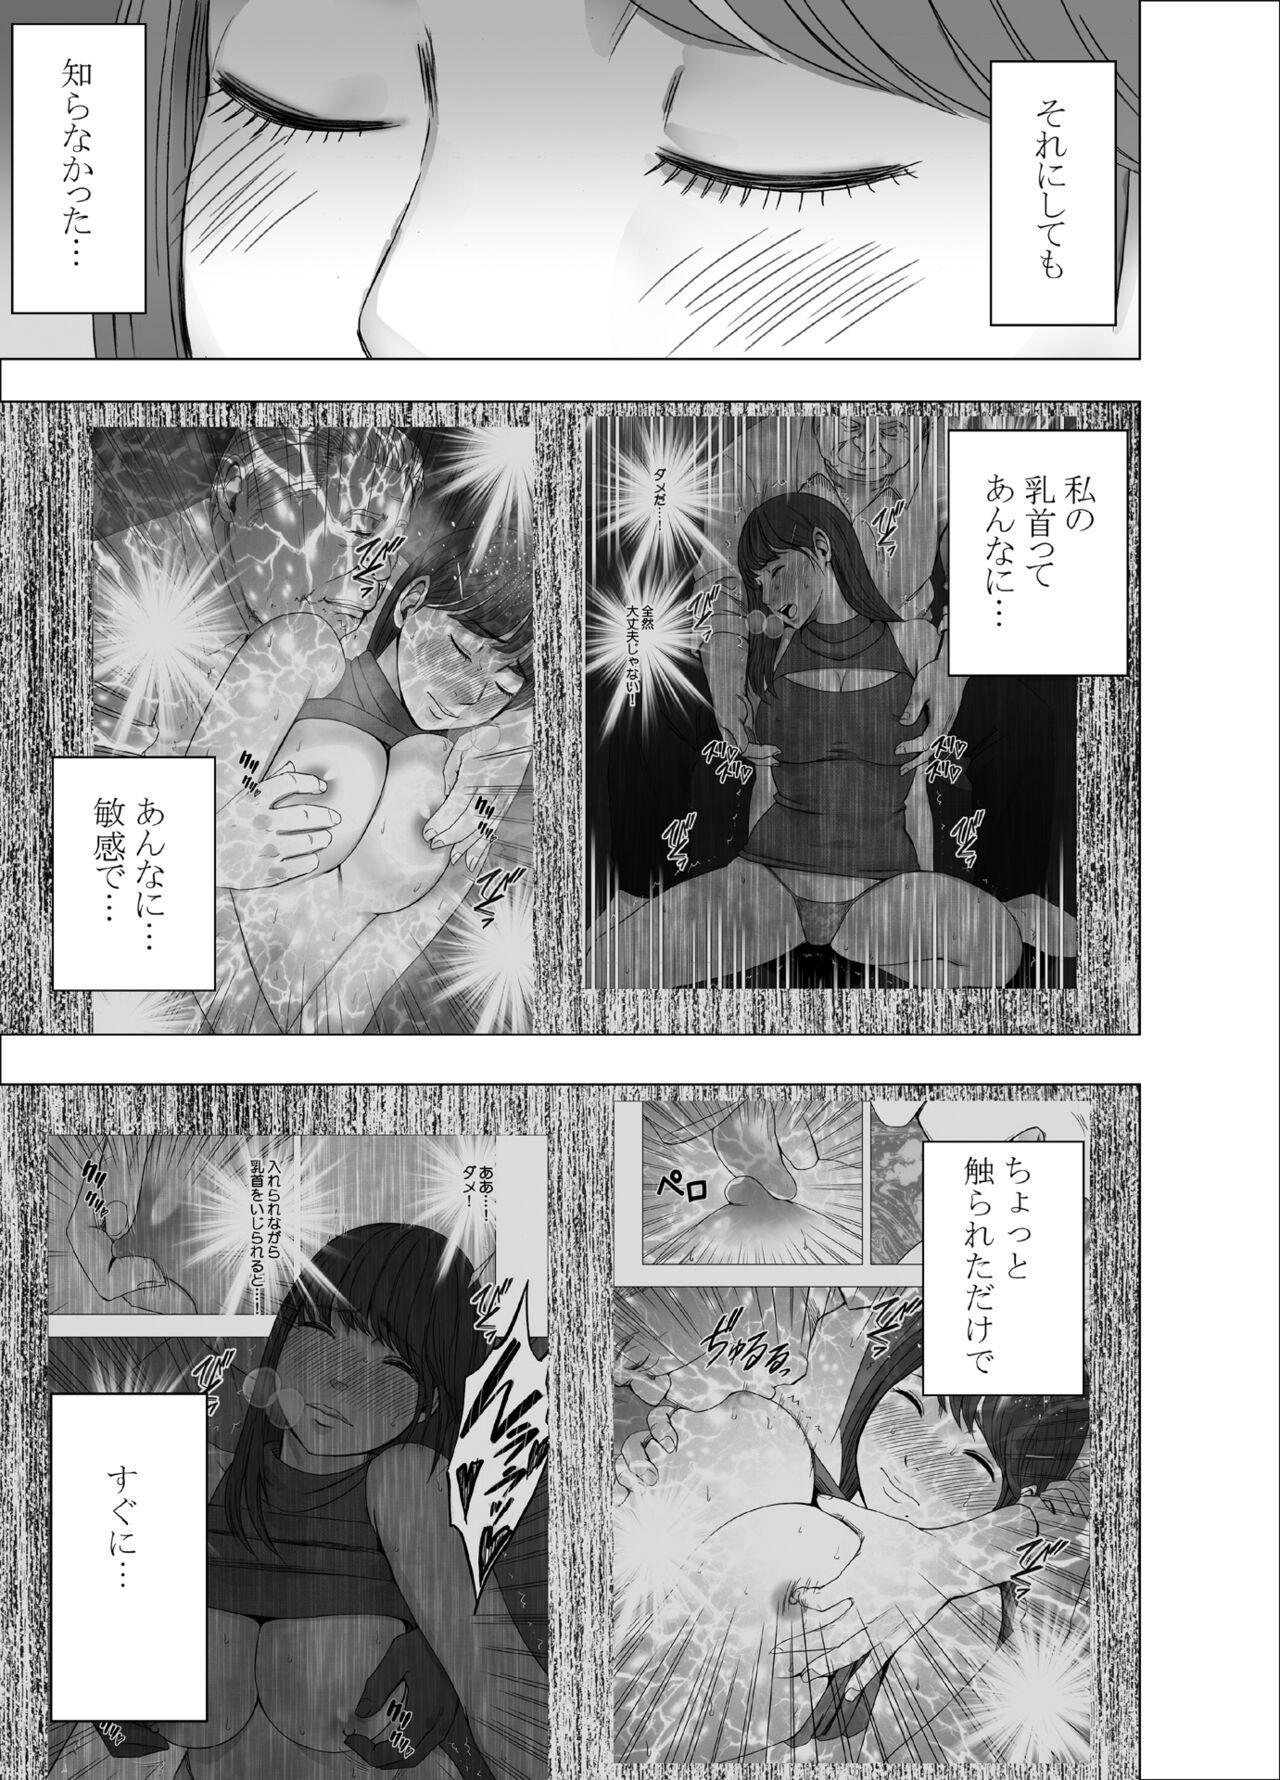 Little Chikubi de Sokuiki suru Joshidaisei 4 - Original Furry - Page 6